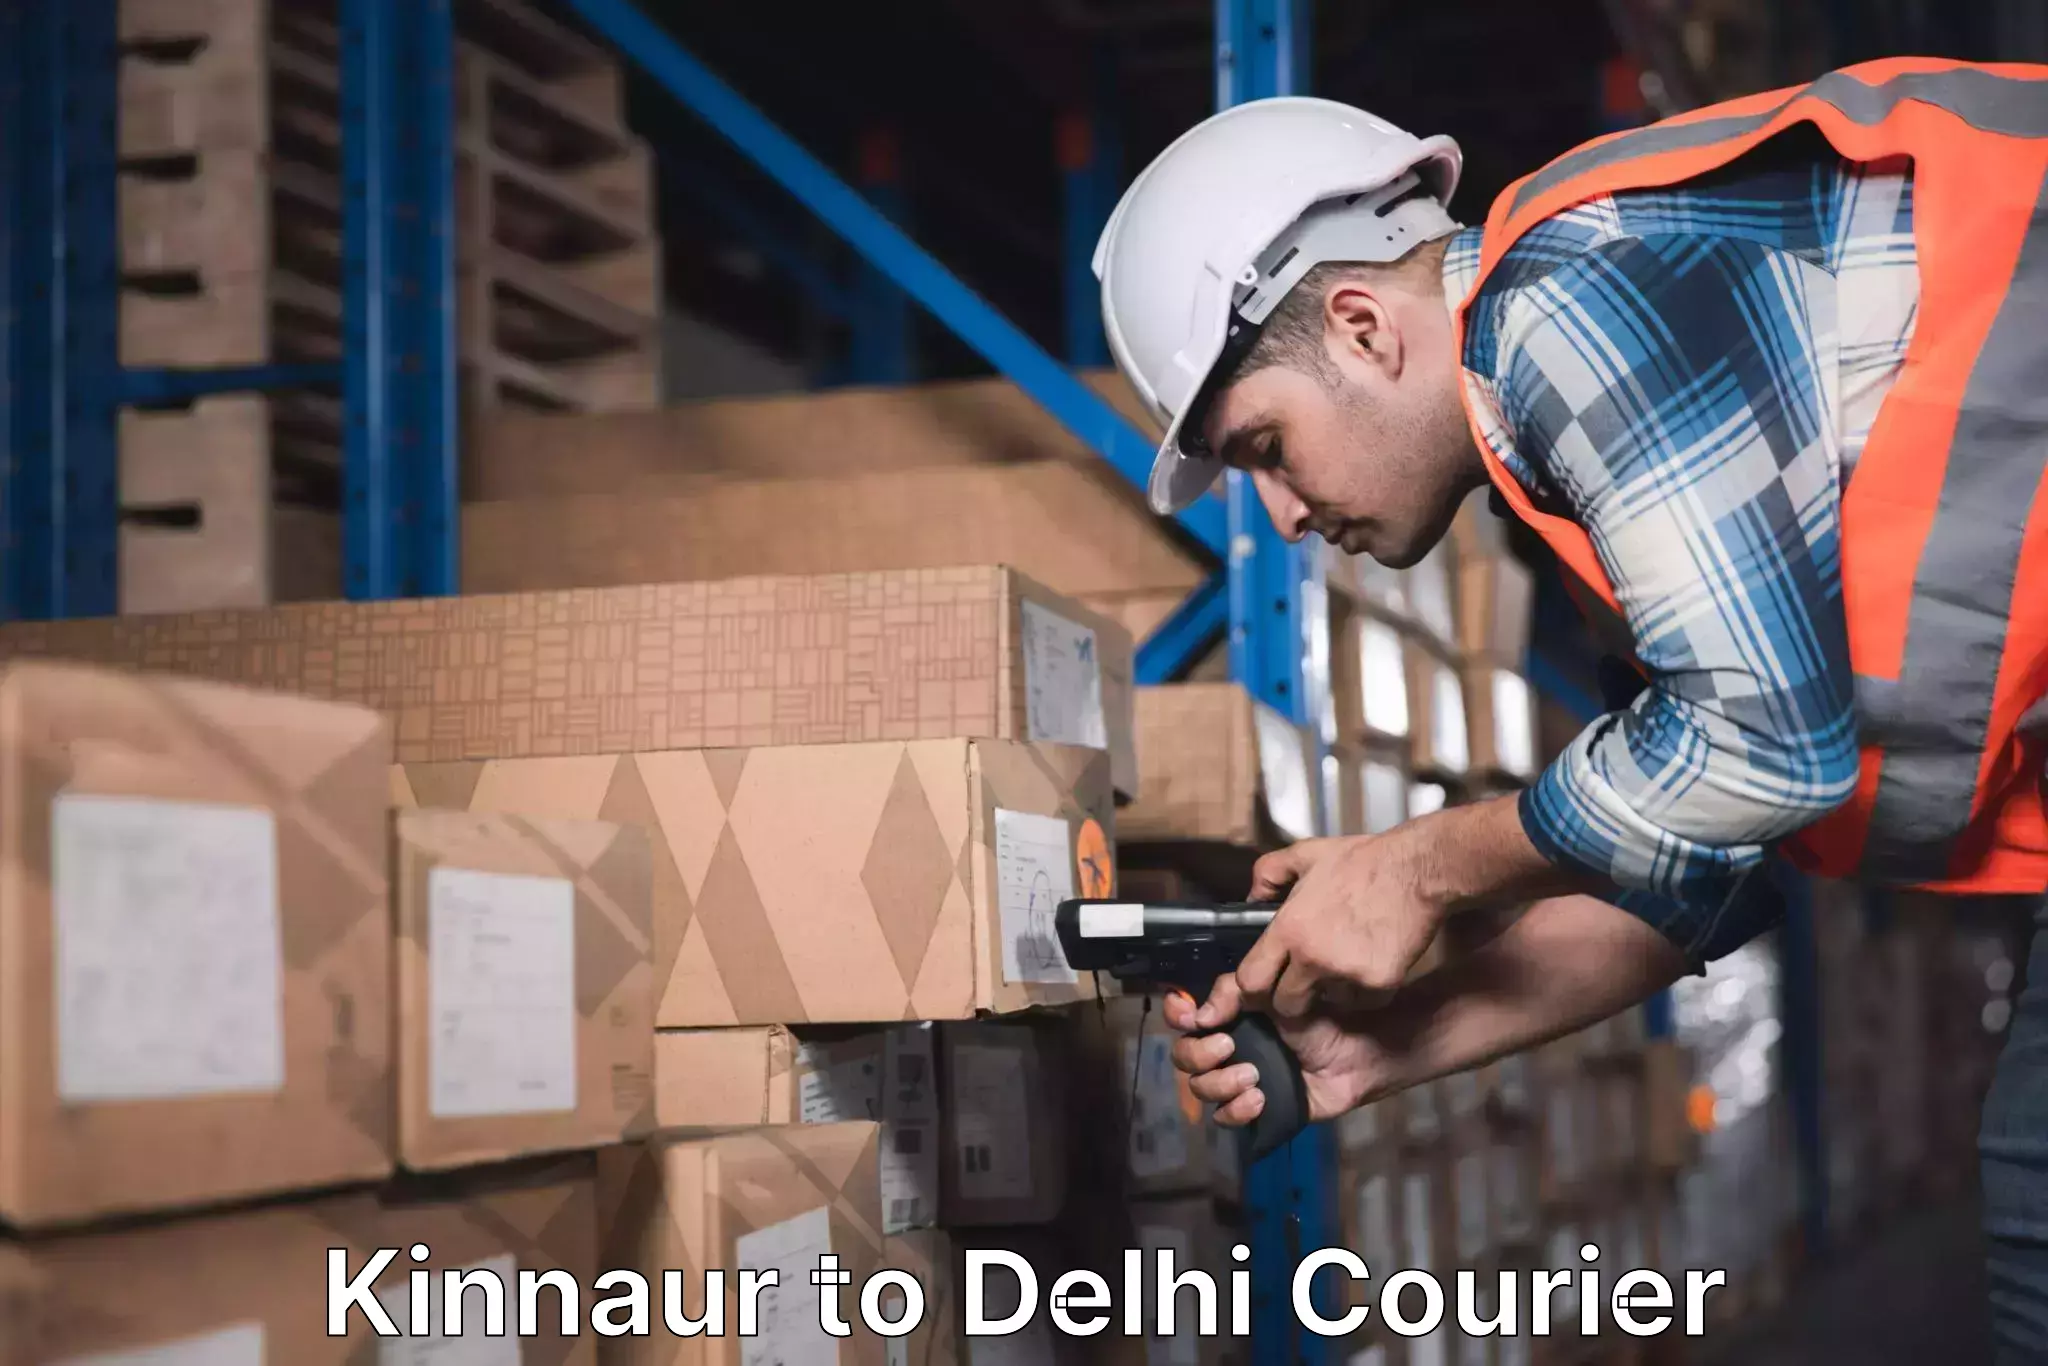 On-call courier service Kinnaur to Delhi